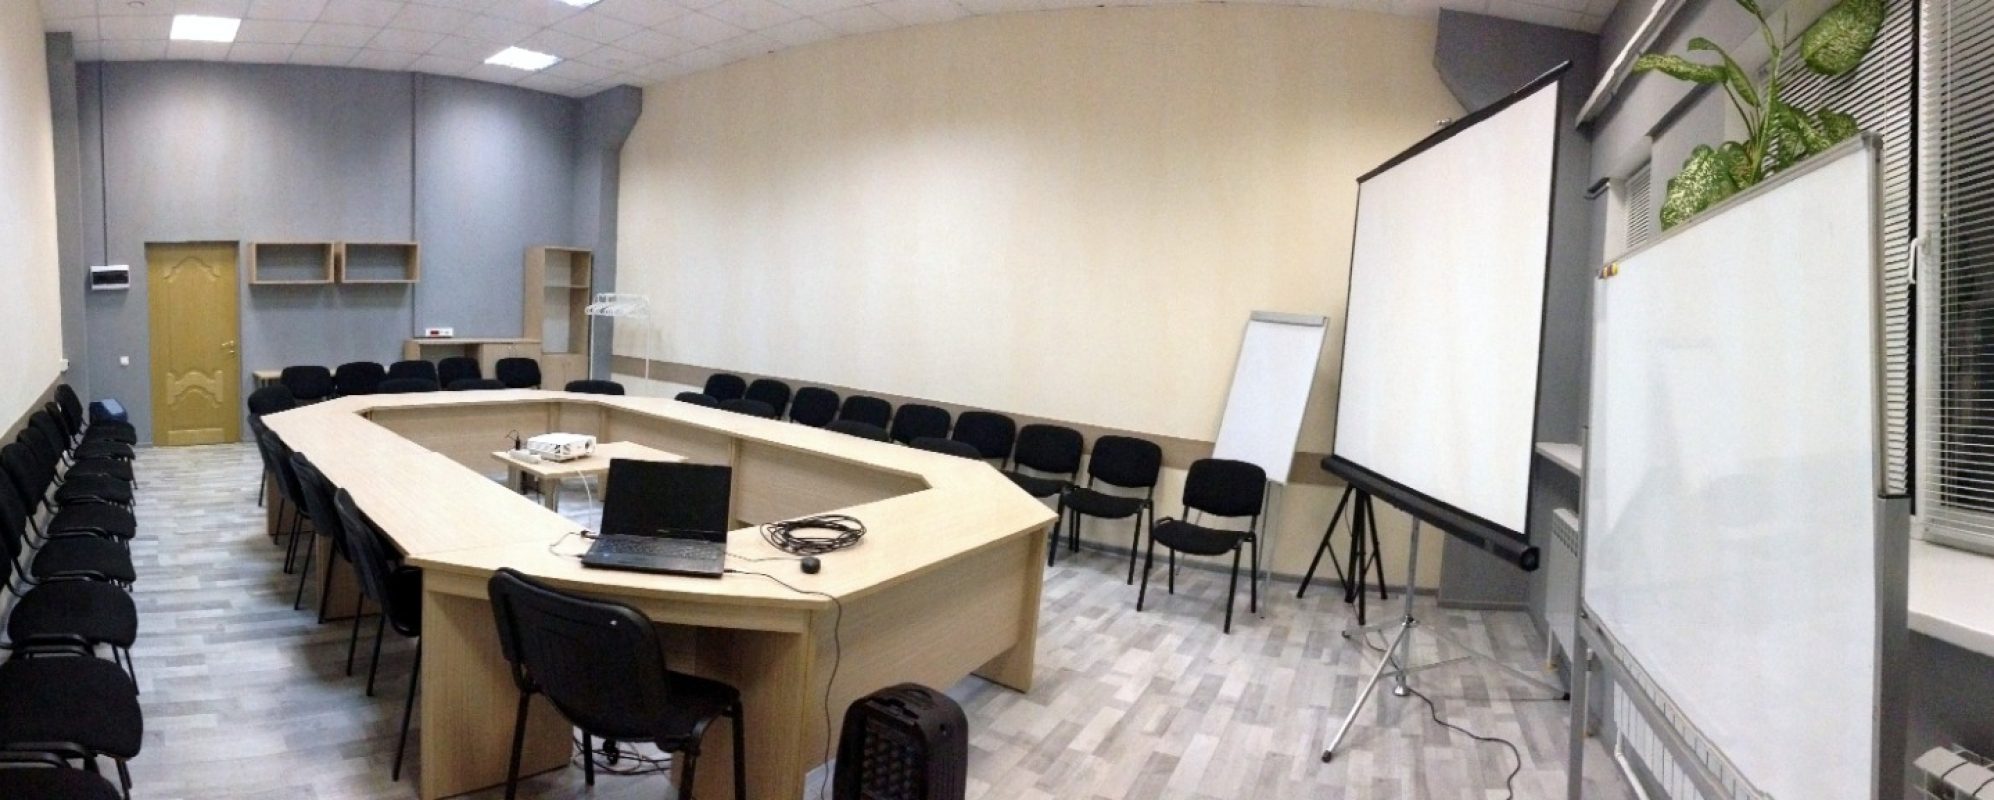 Фотографии комнаты для переговоров Бизнес-пространство КОНТАКТ